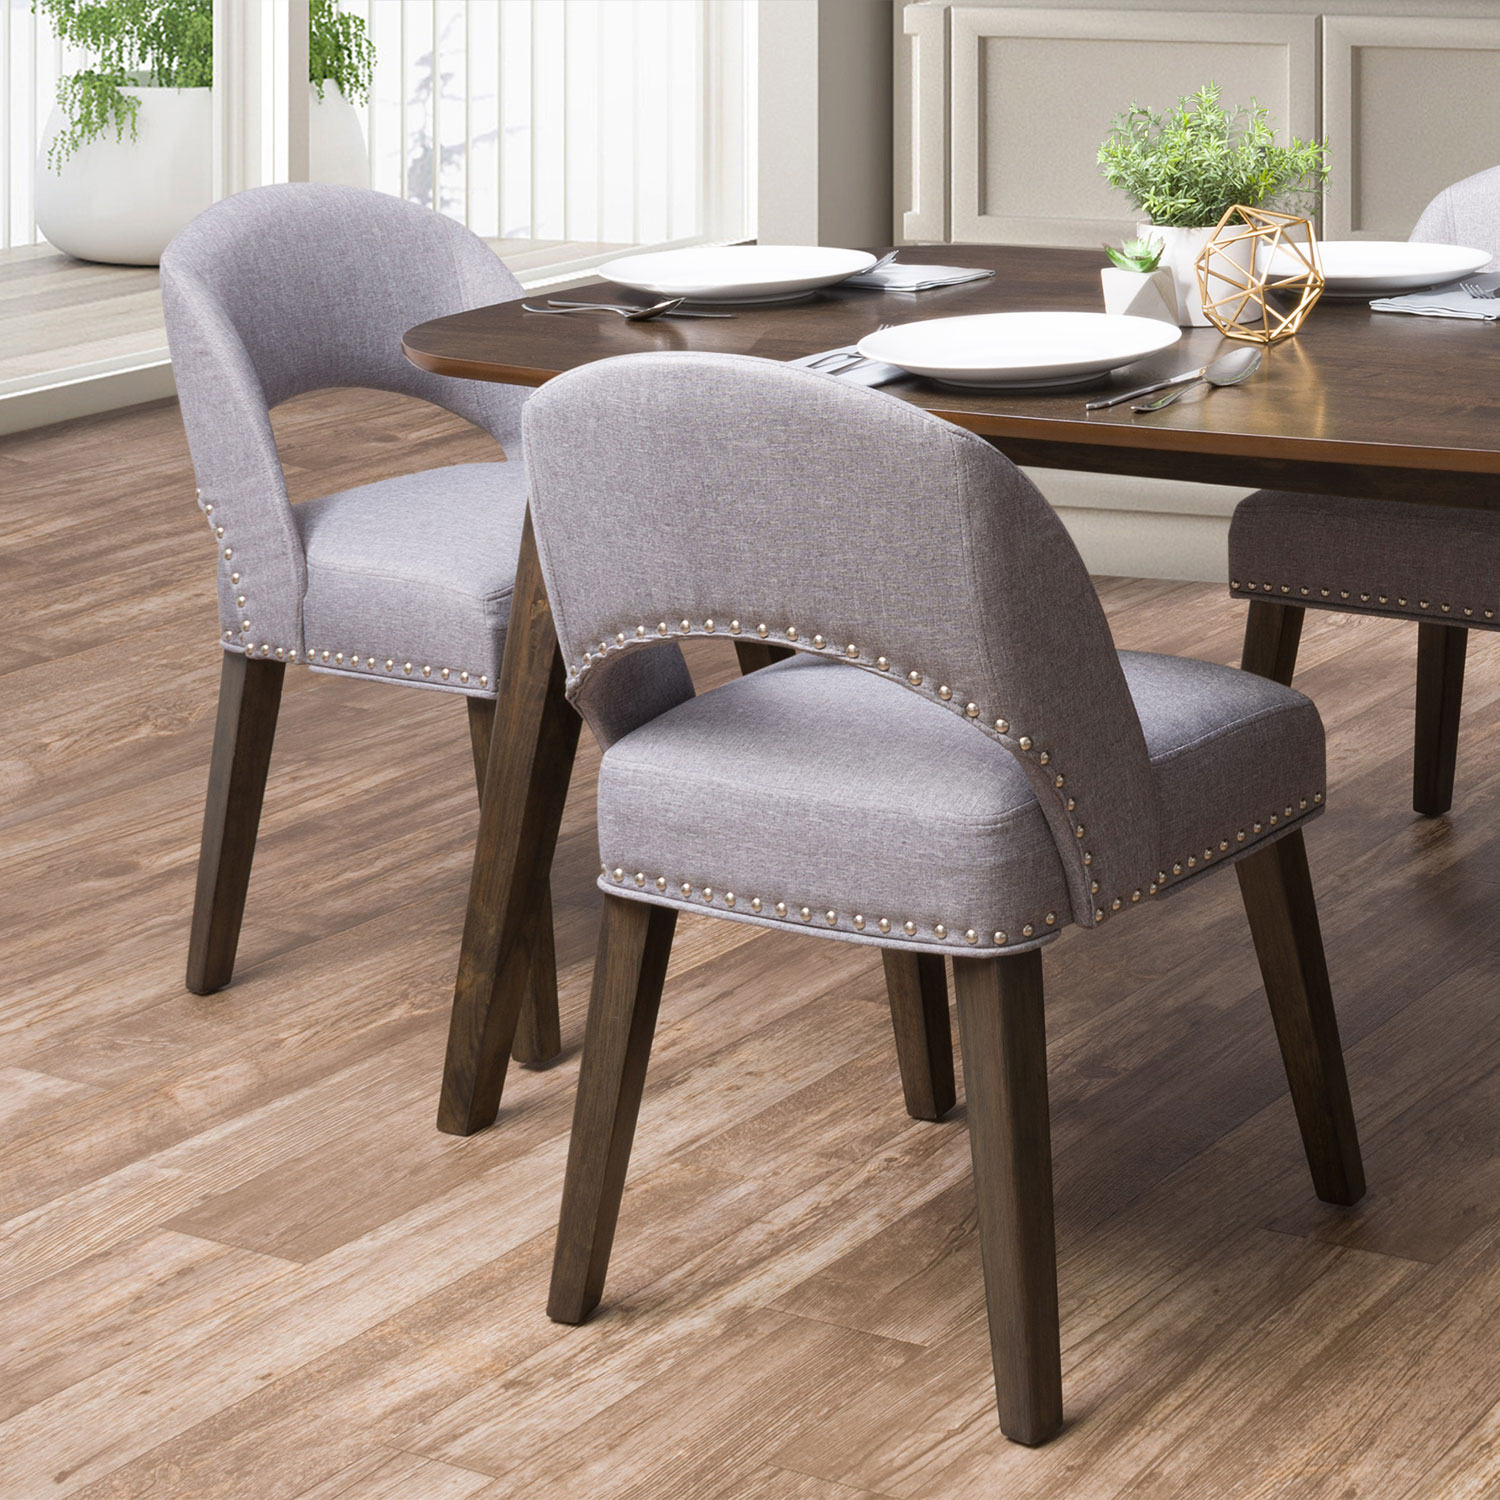 Tiffany Modern Fabric Dining Chair - Set of 2 - Pewter Grey/Espresso